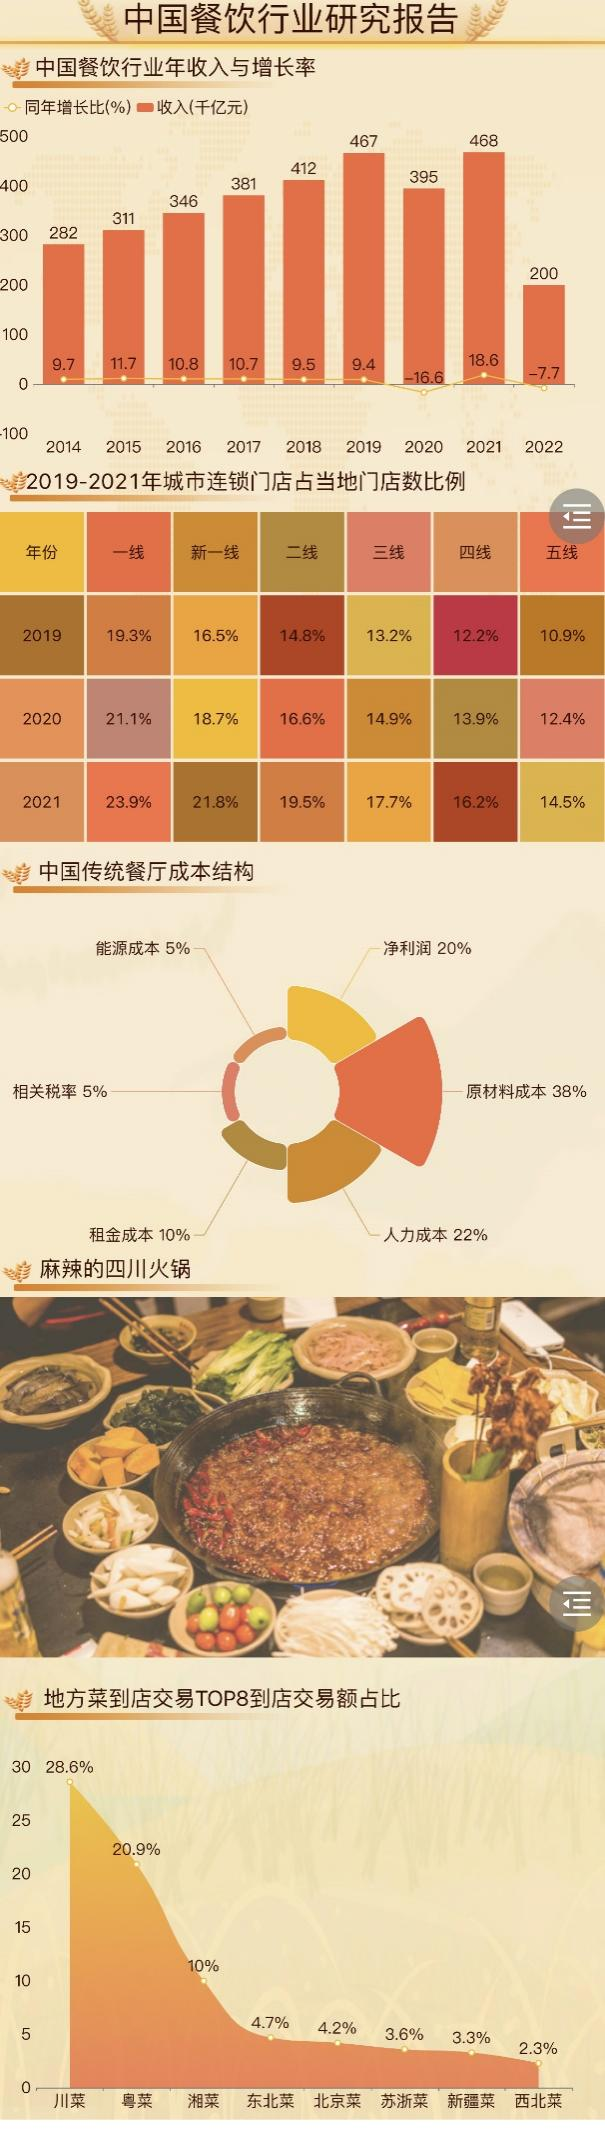 中国餐饮业研究报告-迪赛智慧数